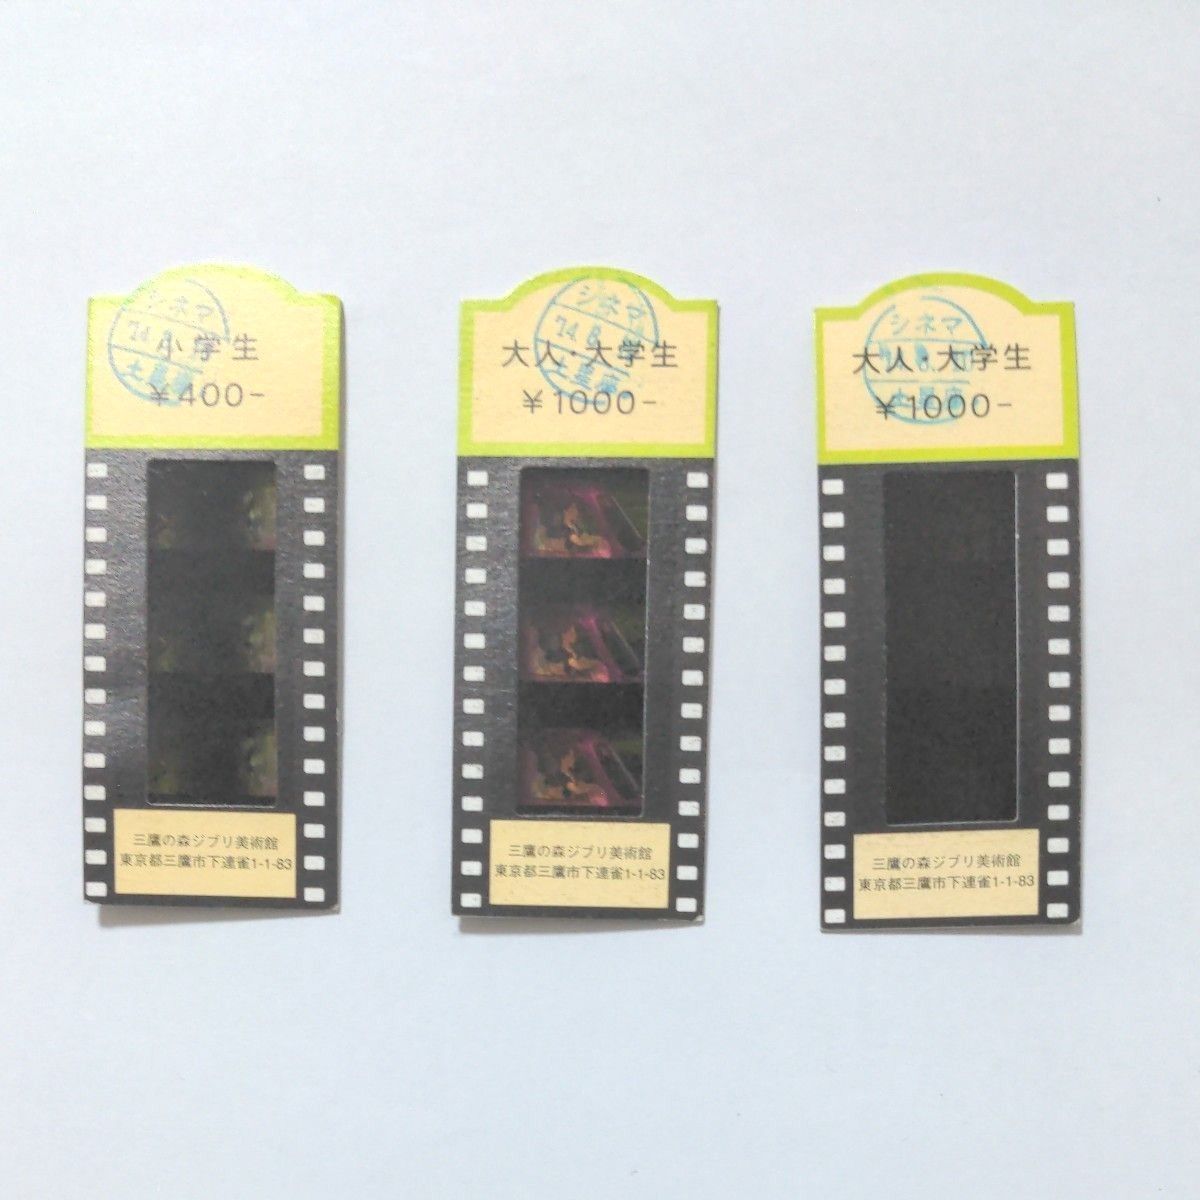 三鷹の森ジブリ美術館 入場券3枚セット フィルム